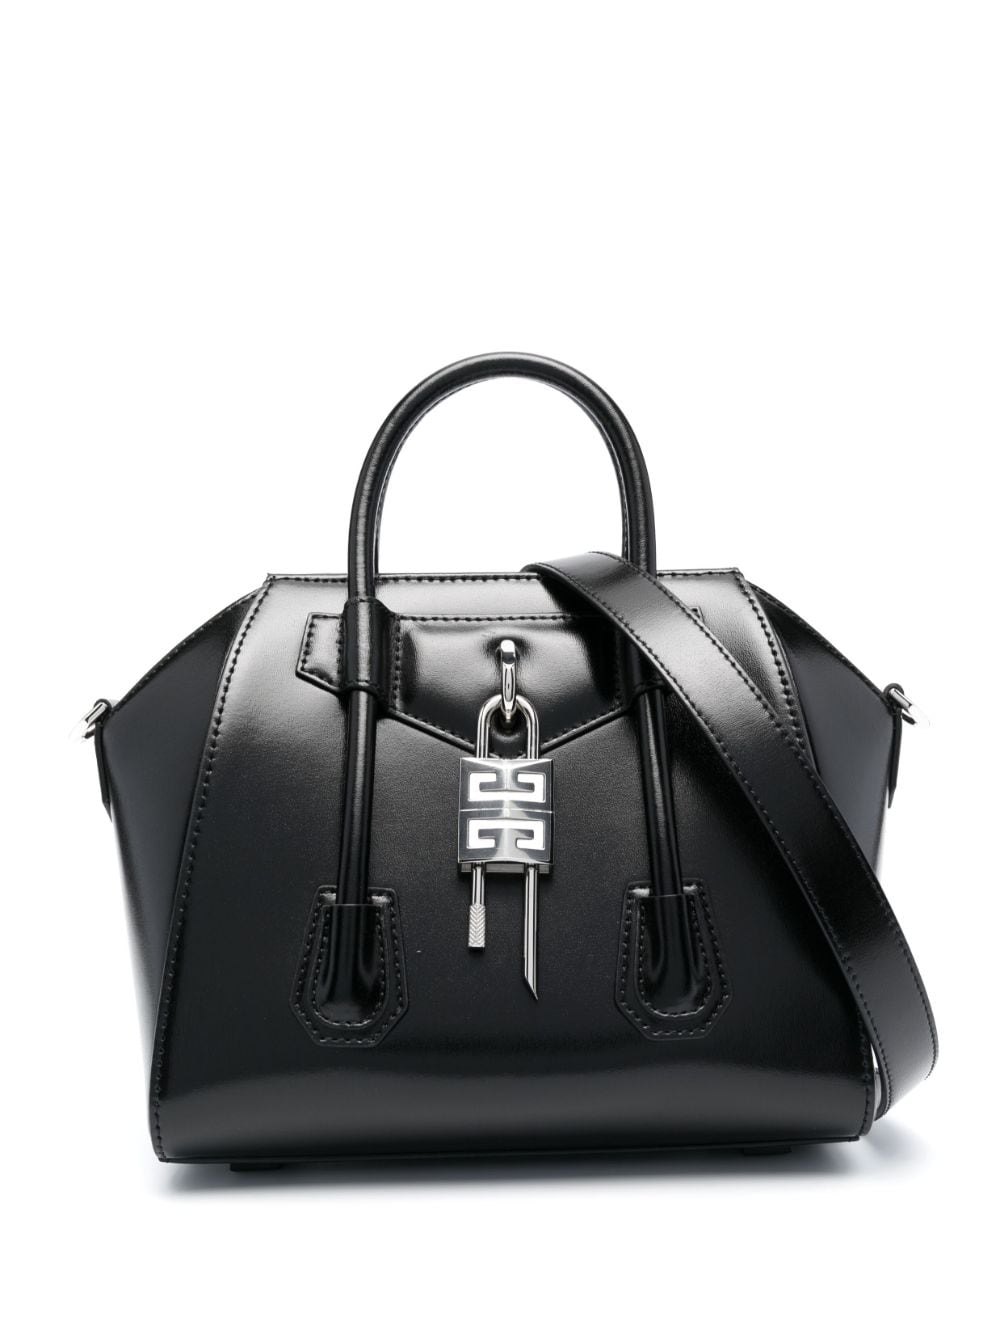 Givenchy Antigona Lock Leather Bag In Black